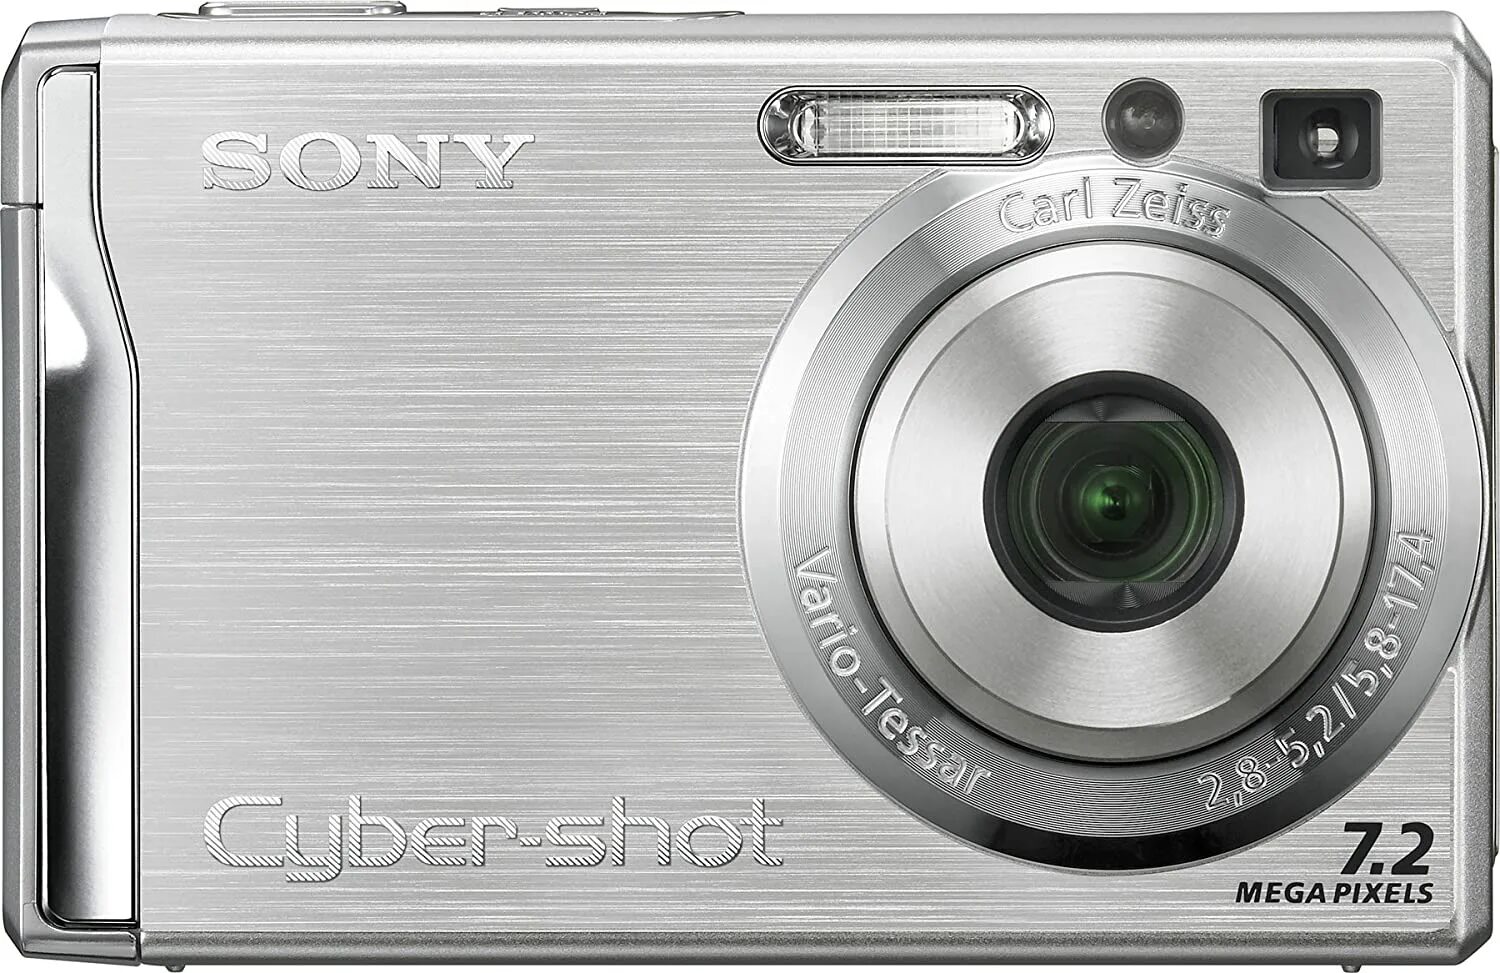 Фотоаппарат Sony Cyber-shot 7.2 Mega Pixels. Фотоаппарат Sony Cyber-shot 7.2 Mega Pixels зарядка. Фотоаппарат сони супер шот 7.2.